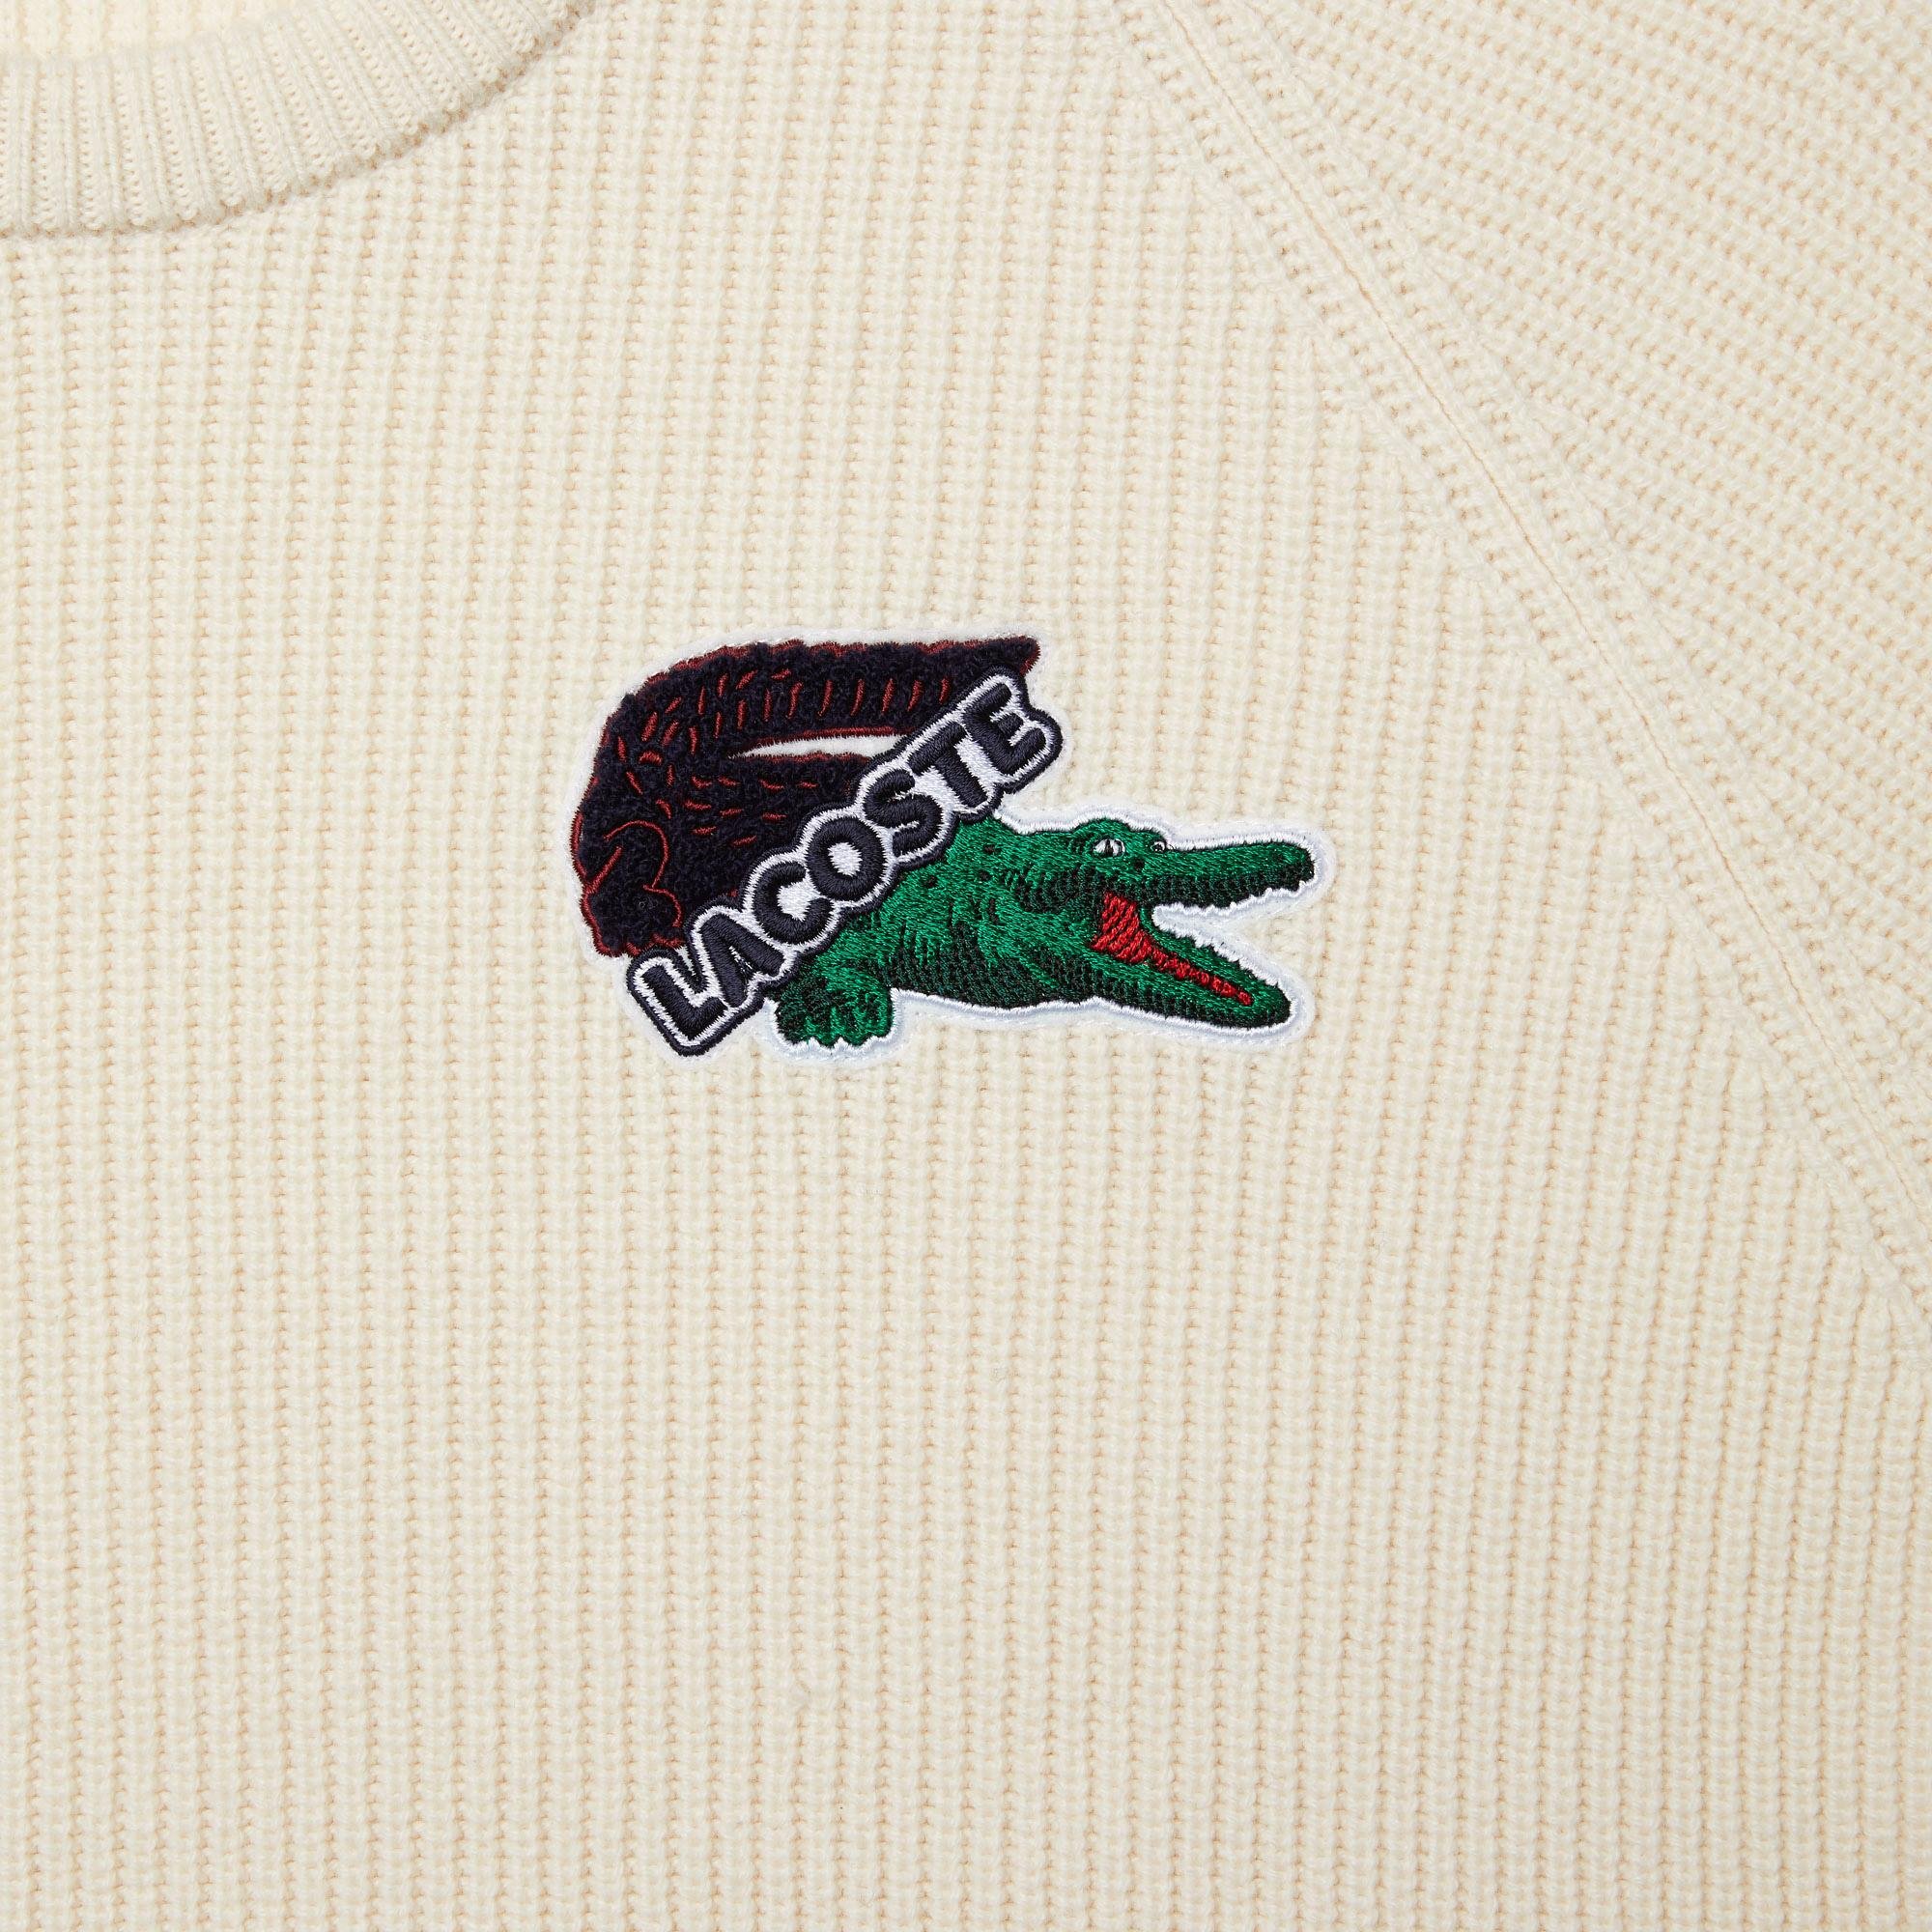 Lacoste pánský volnočasový svetr s velkým krokodýlem